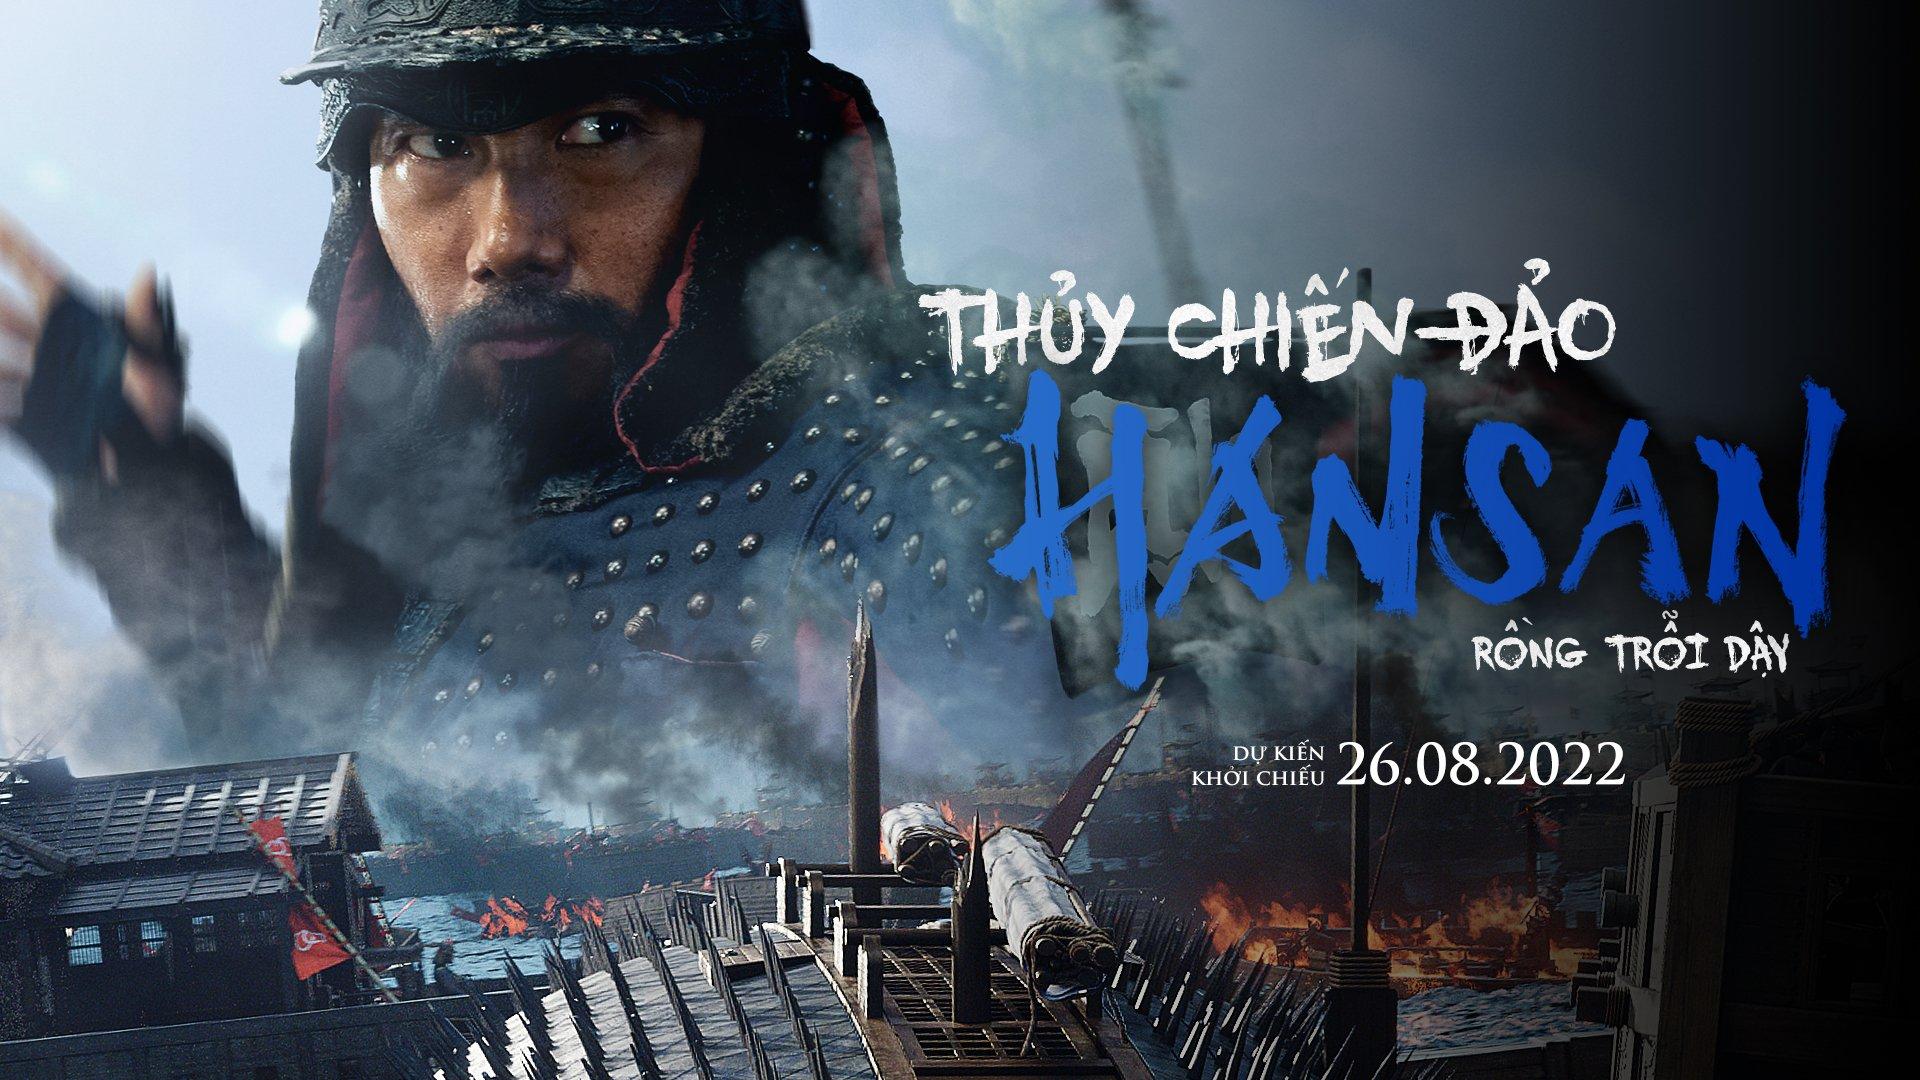 Thủy Chiến Đảo Hansan: Rồng Trỗi Dậy-Hansan: Rising Dragon